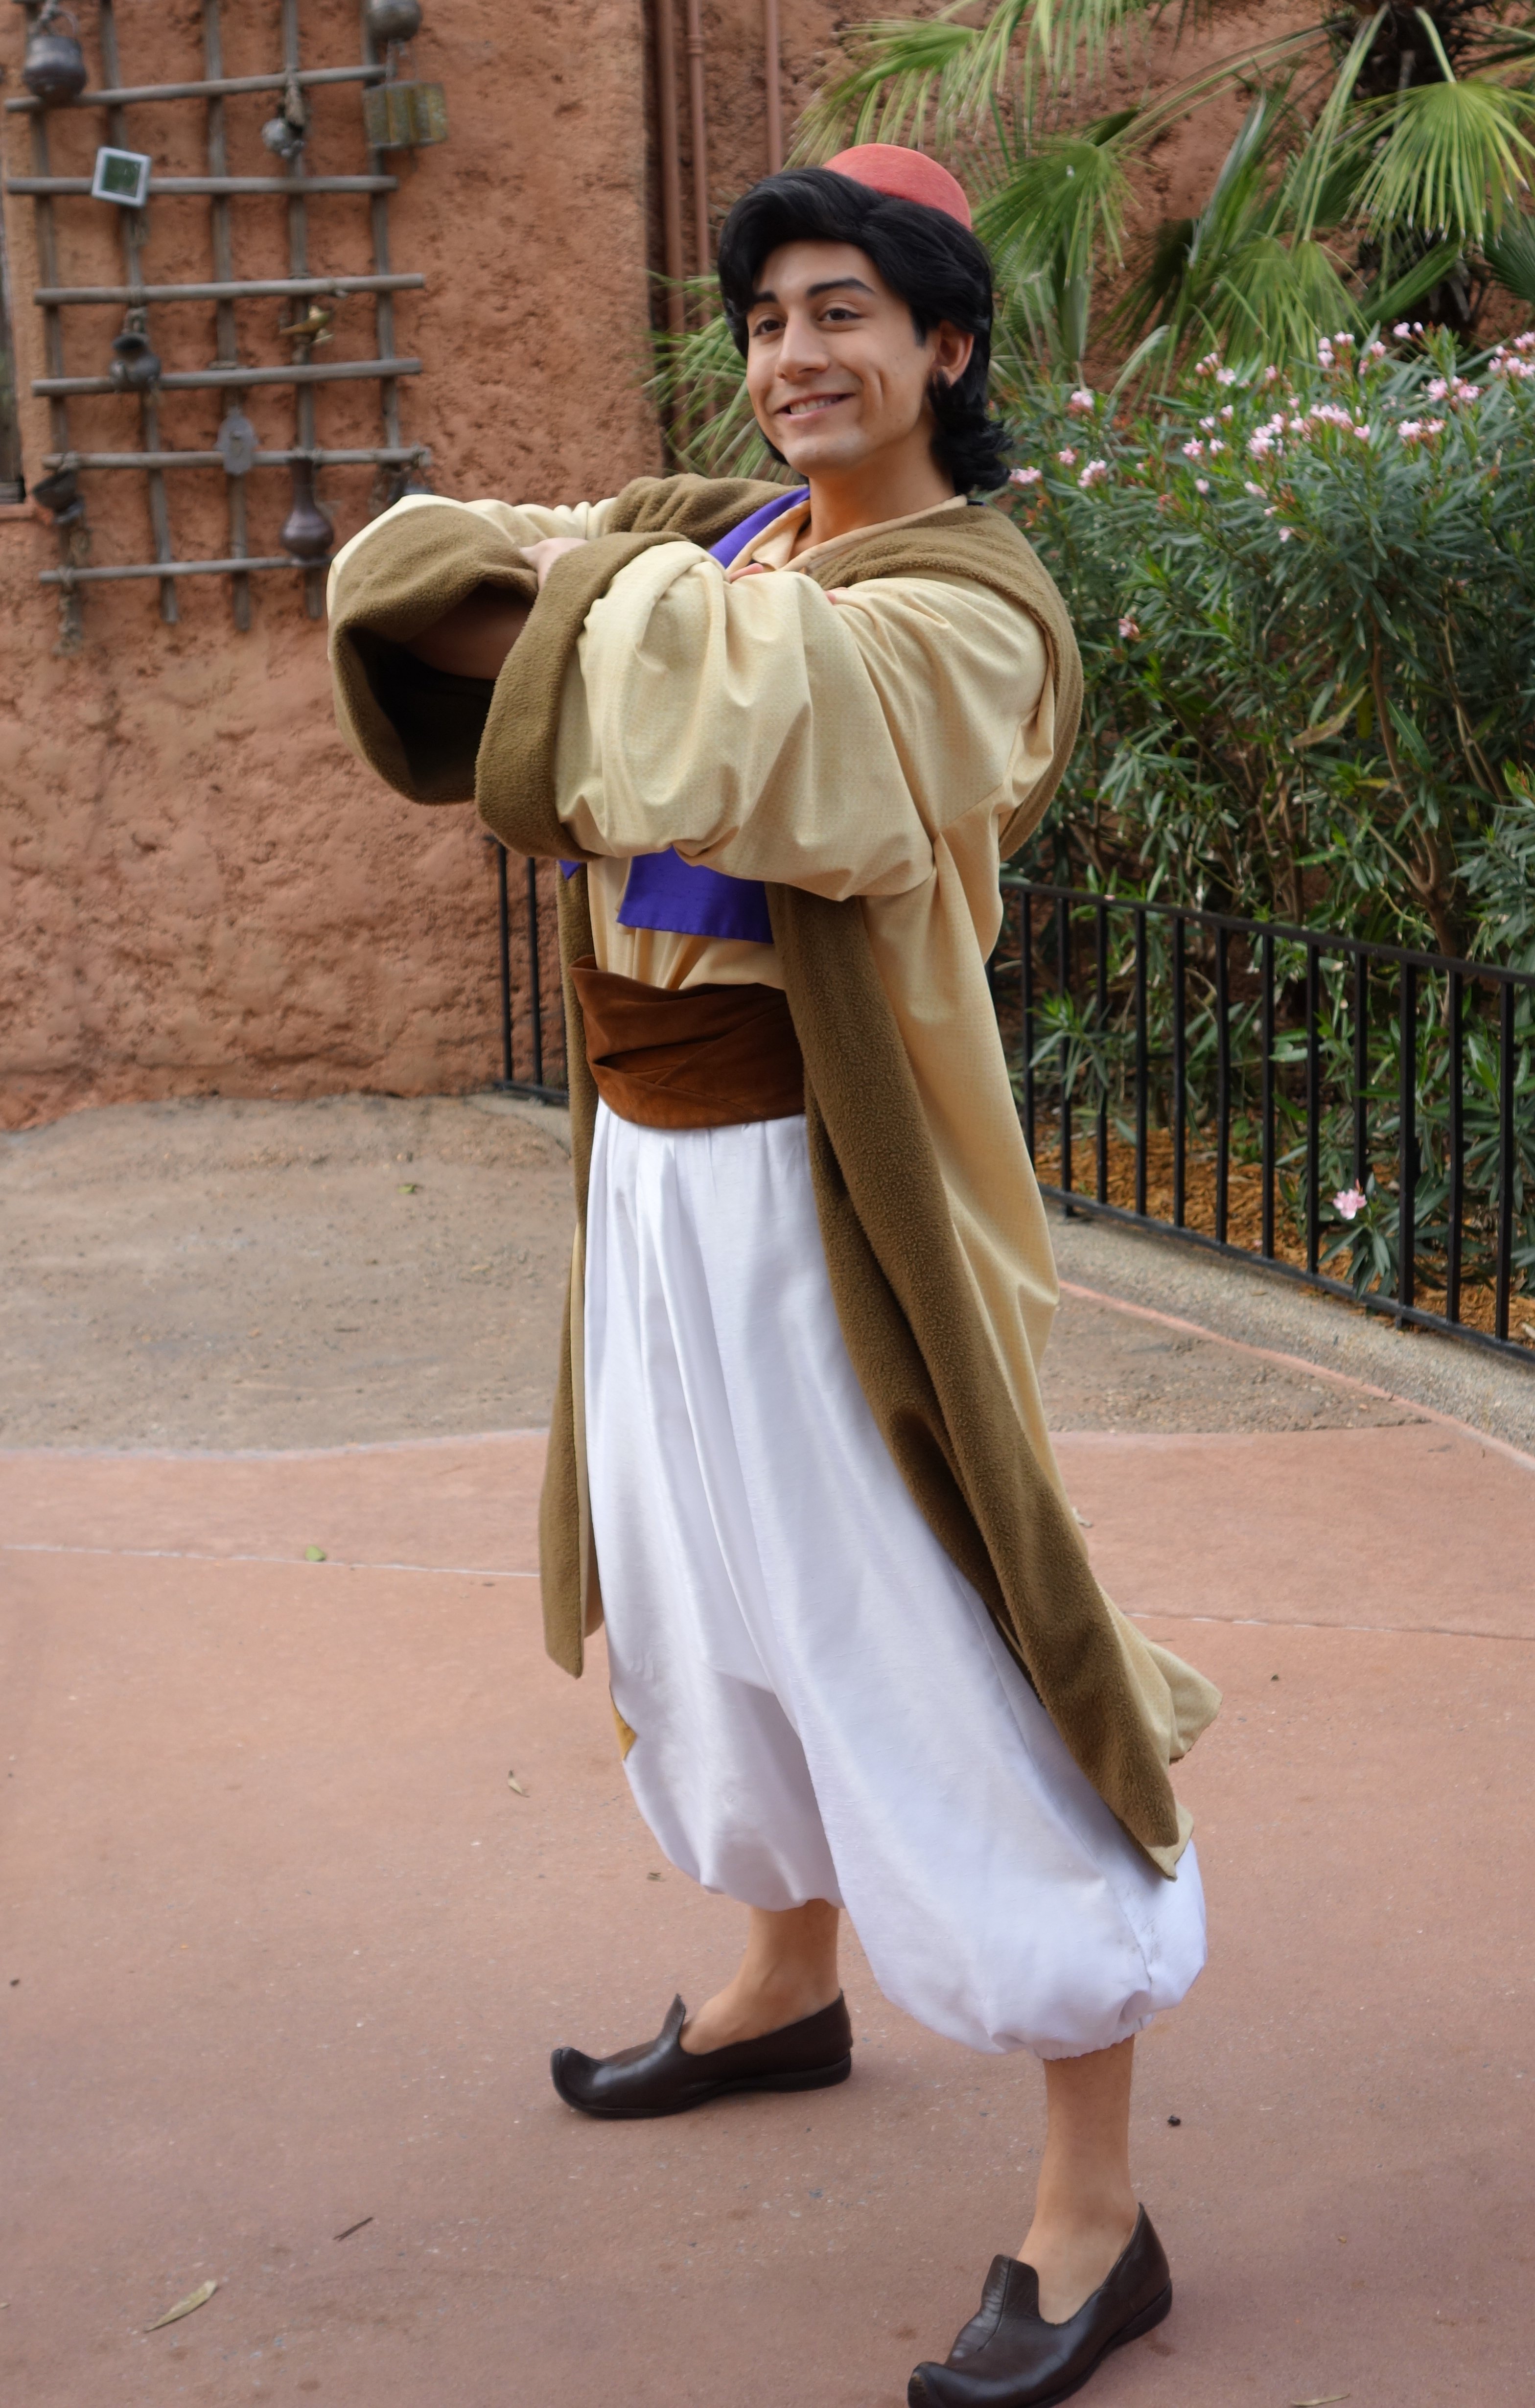 Aladdin at Morocco in EPCOT 2013